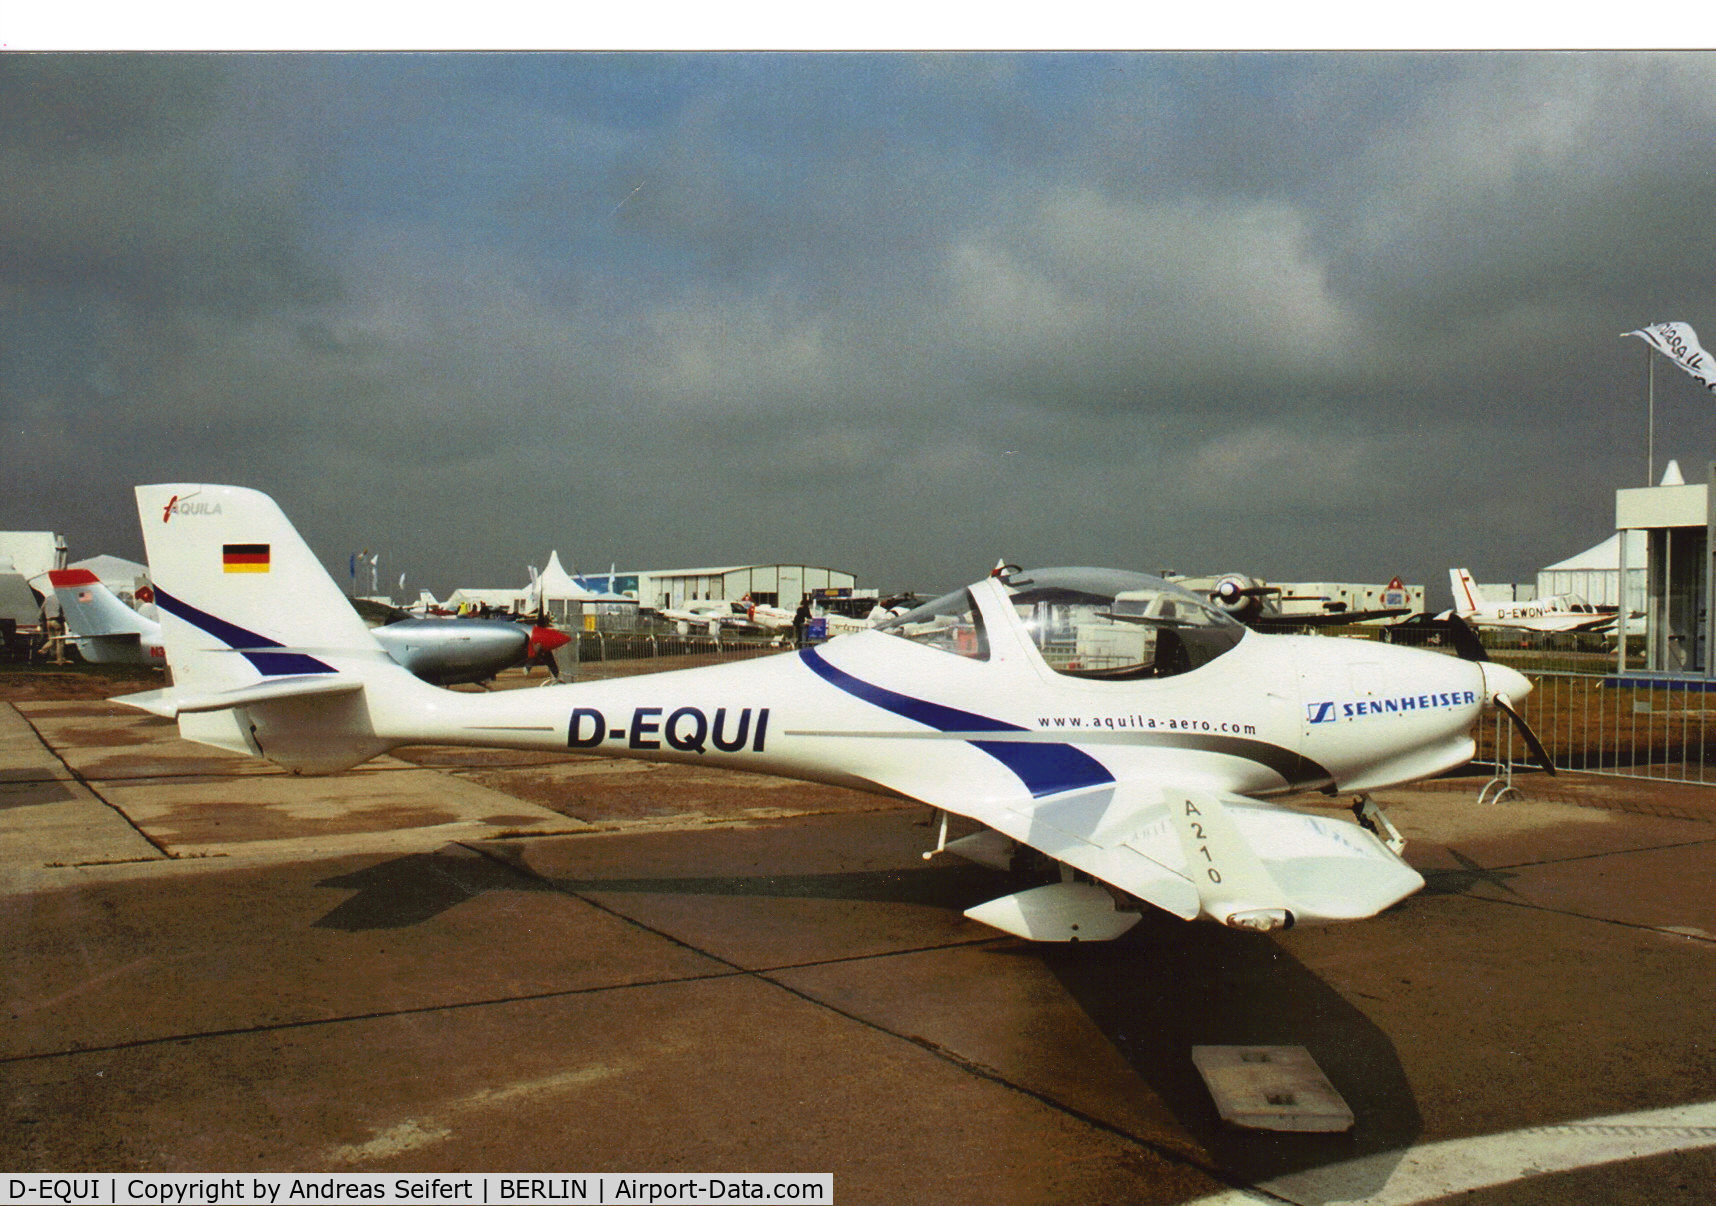 D-EQUI, Aquila A210 (AT01) C/N AT01-100, Berlin ILA 2004